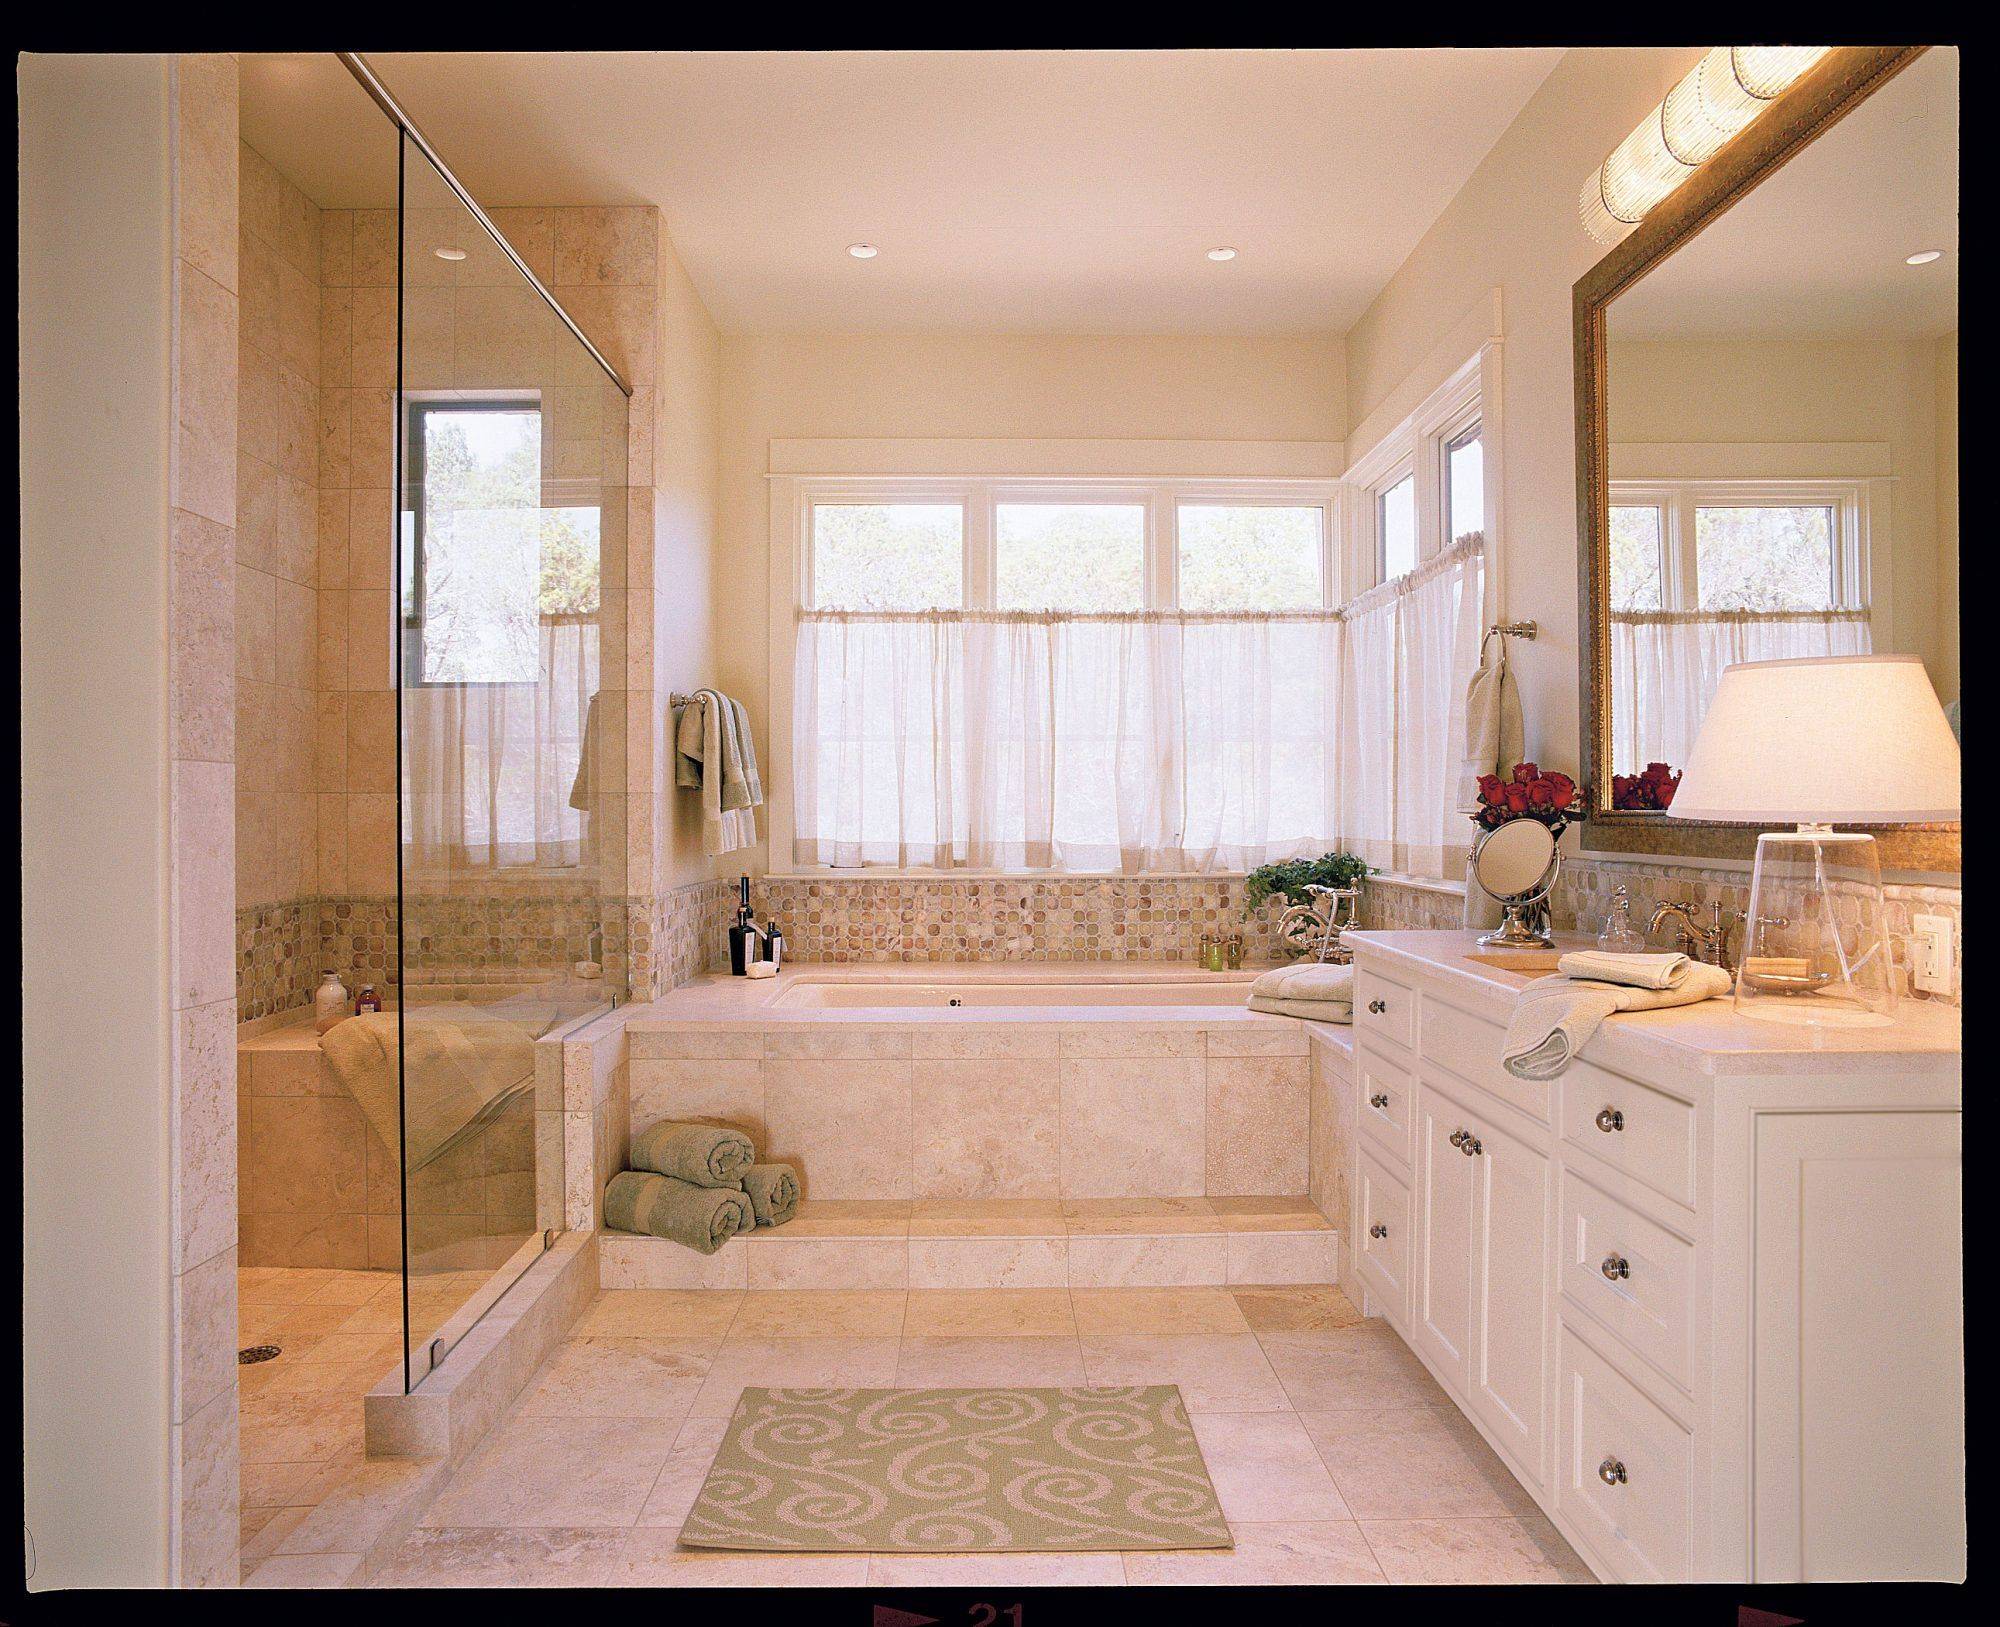 Небольшая ванная с окном. Интерьер ванной с окном. Ванна ая комната с окном. Планировка ванной комнаты с окном.